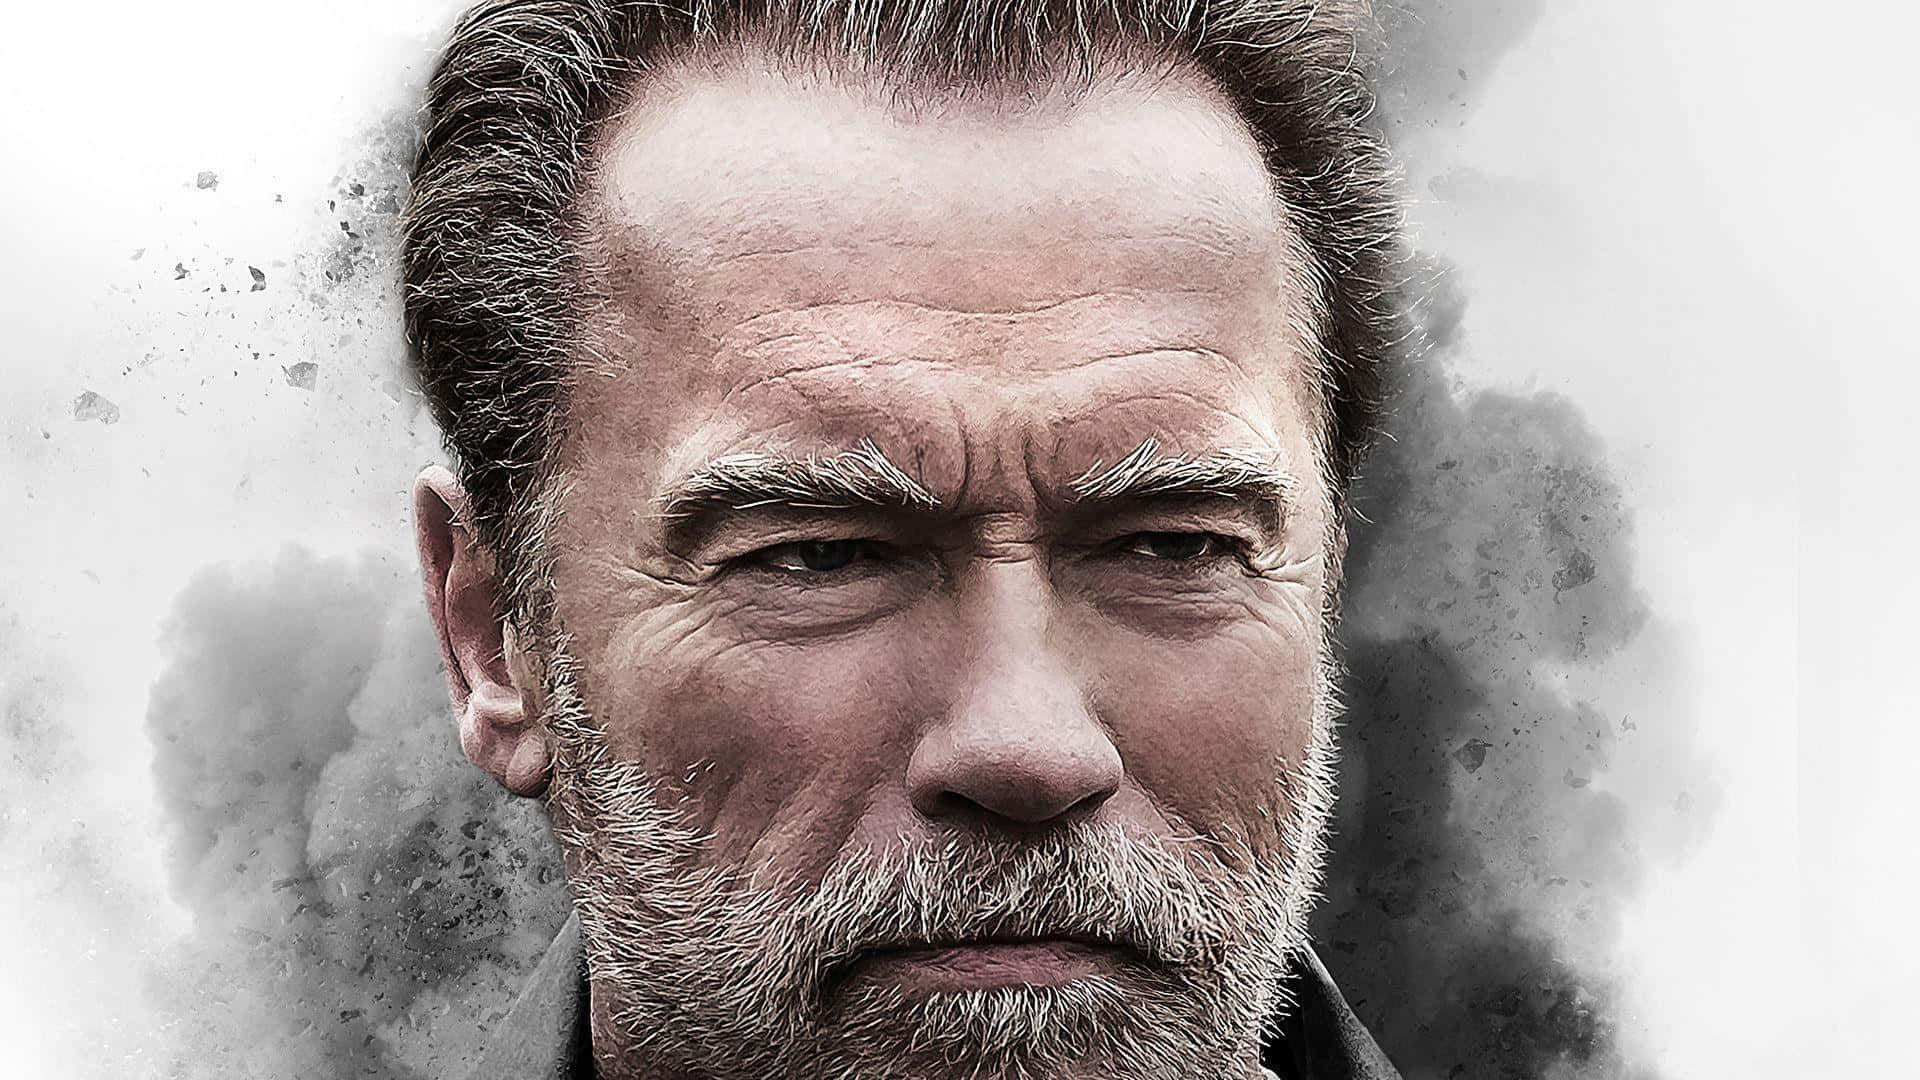 Arnold Schwarzenegger In His Prime